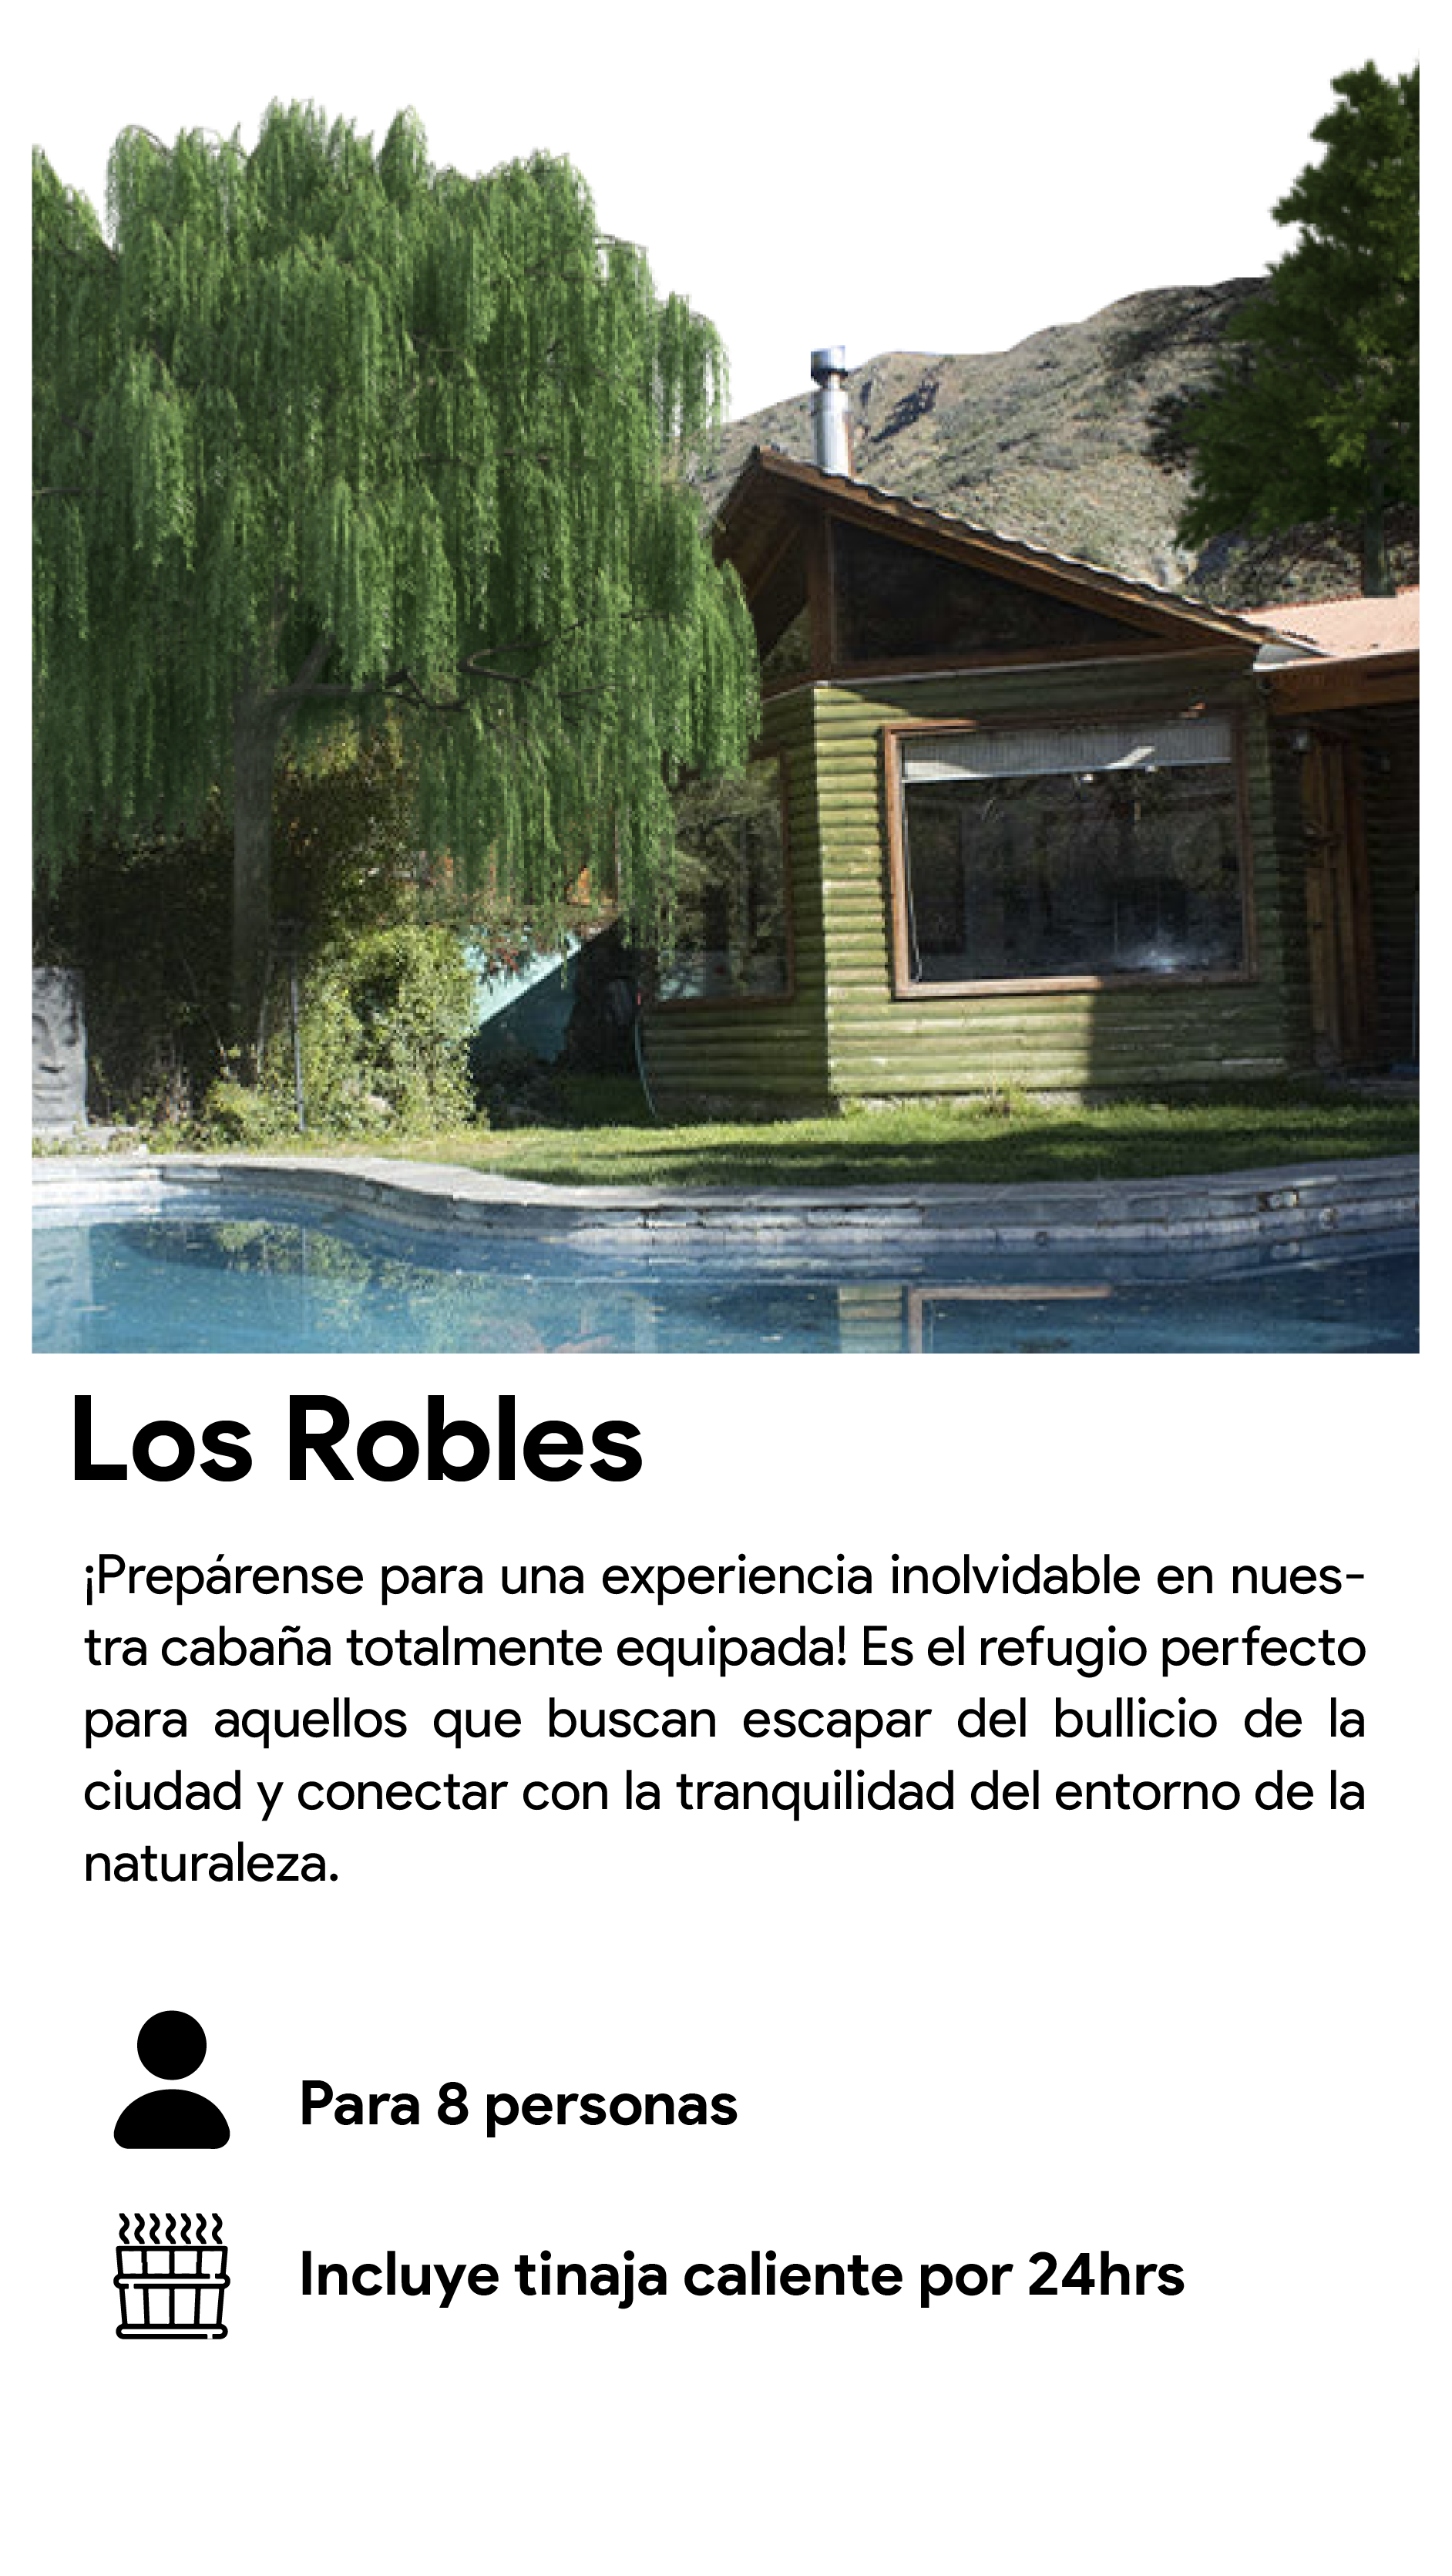 Los Robles_turismo rural el ingenio